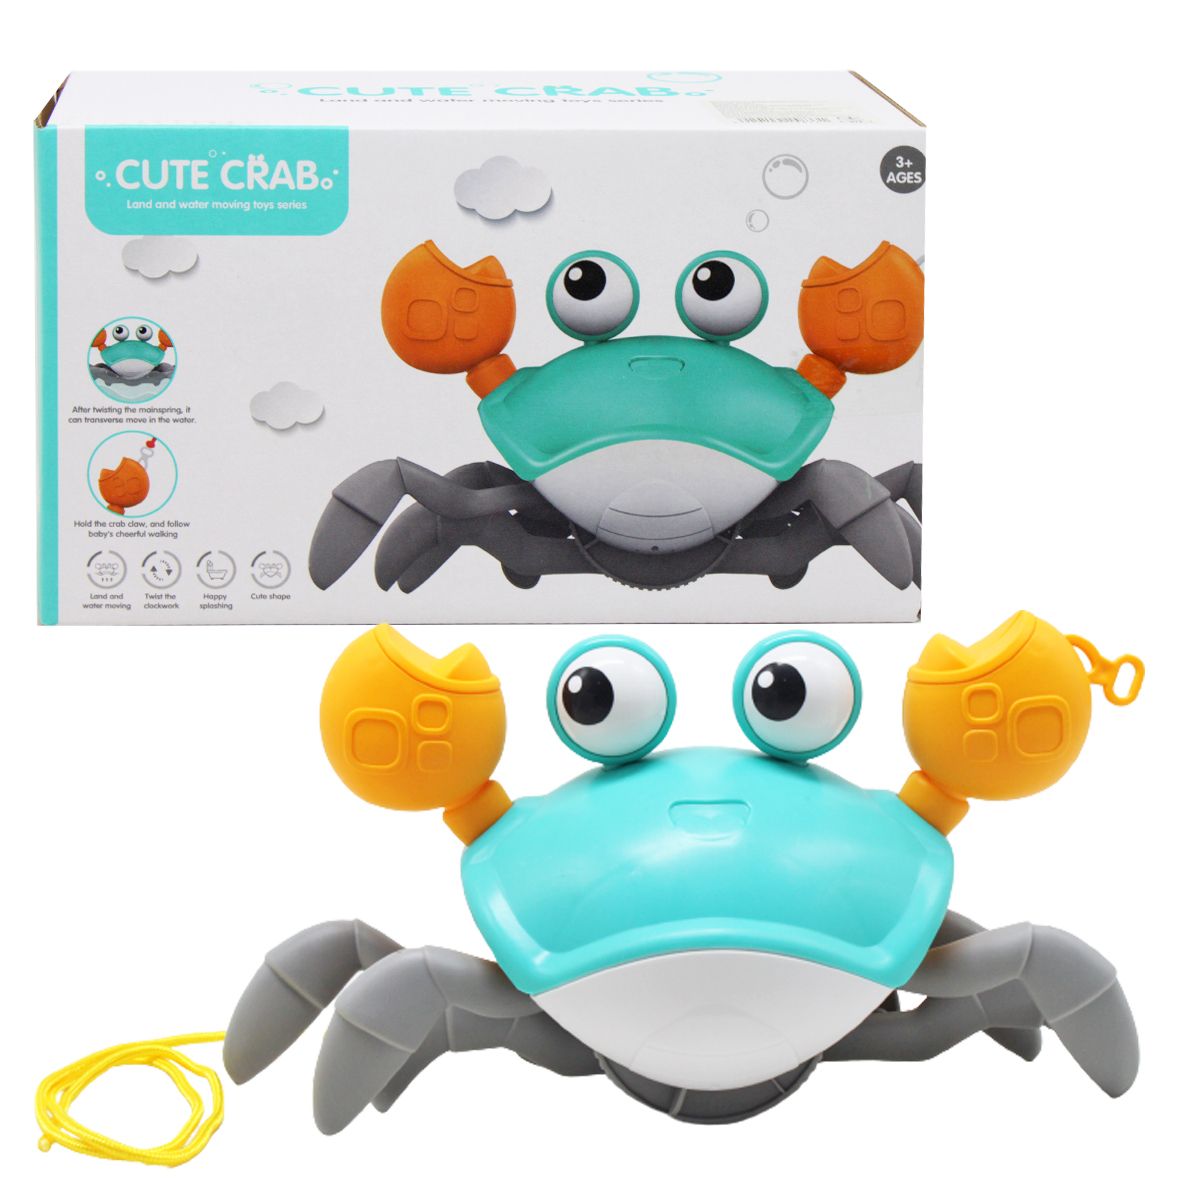 Заводна іграшка "Cute crab" (бірюзовий)